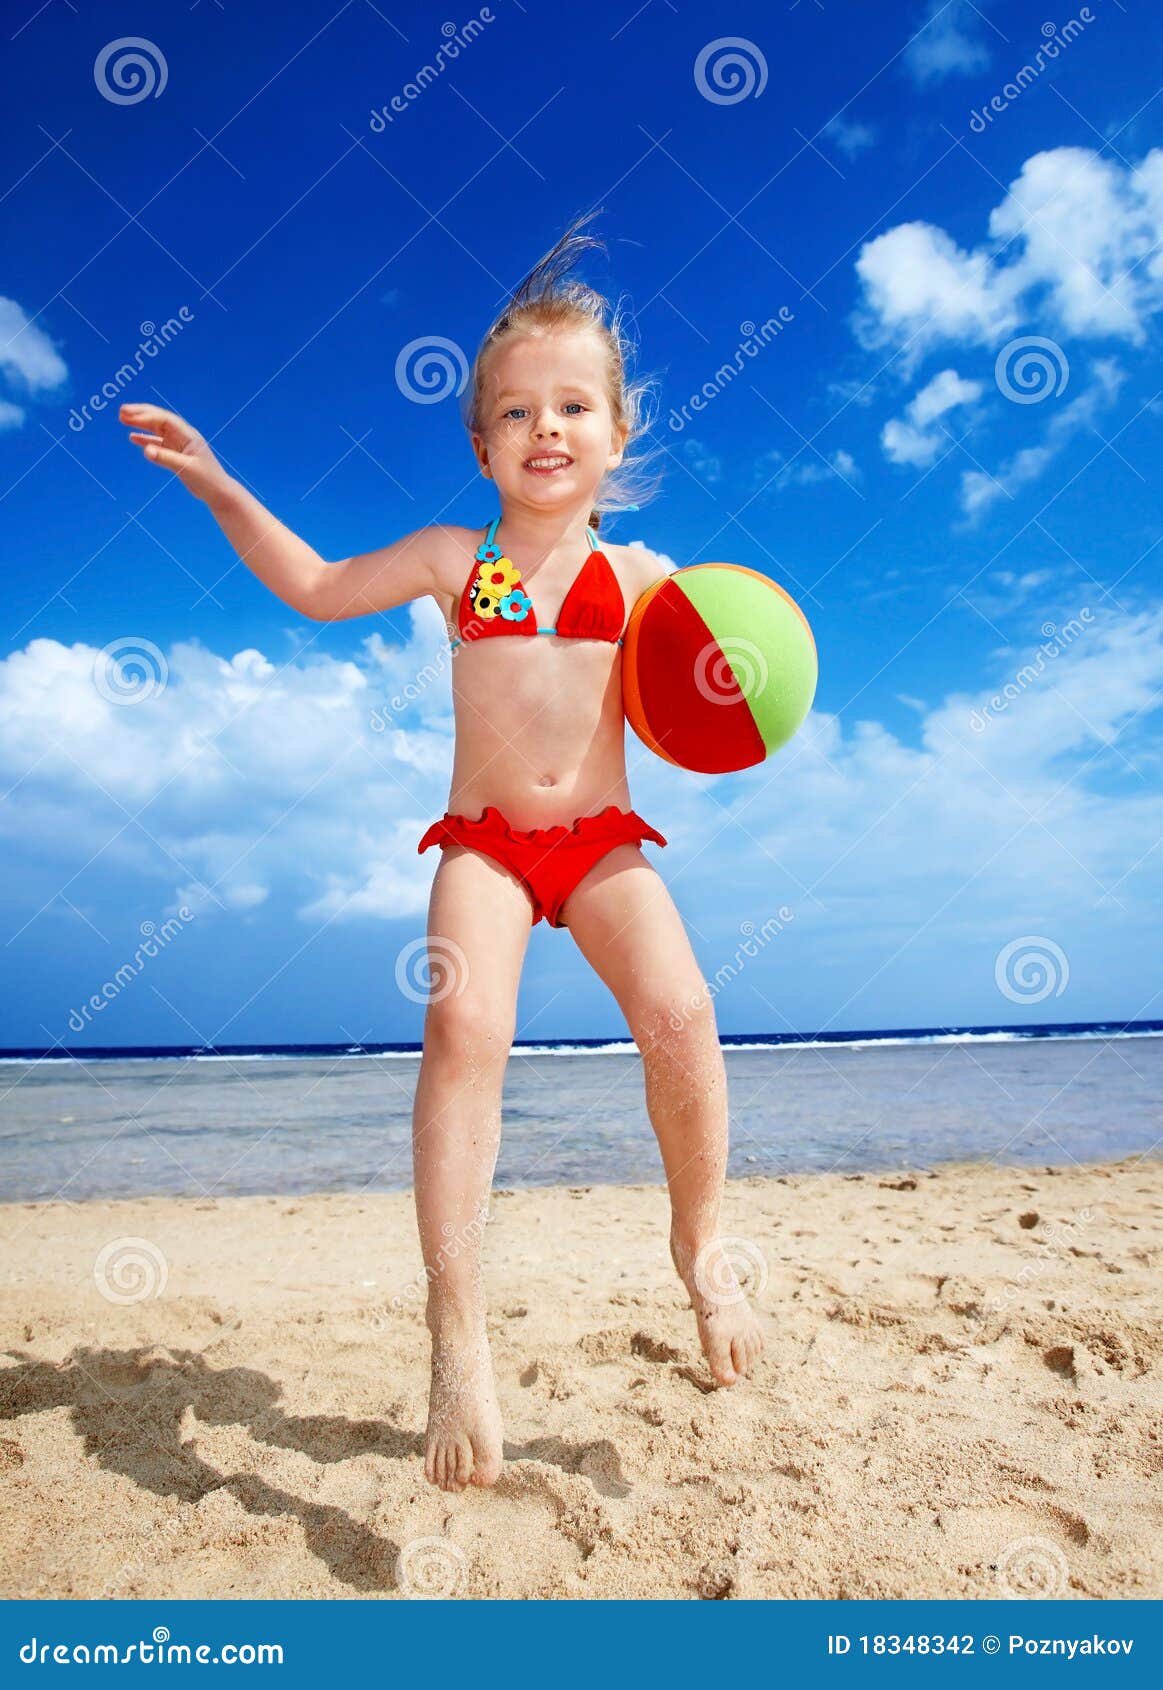 фото детей на голом пляже фото 33